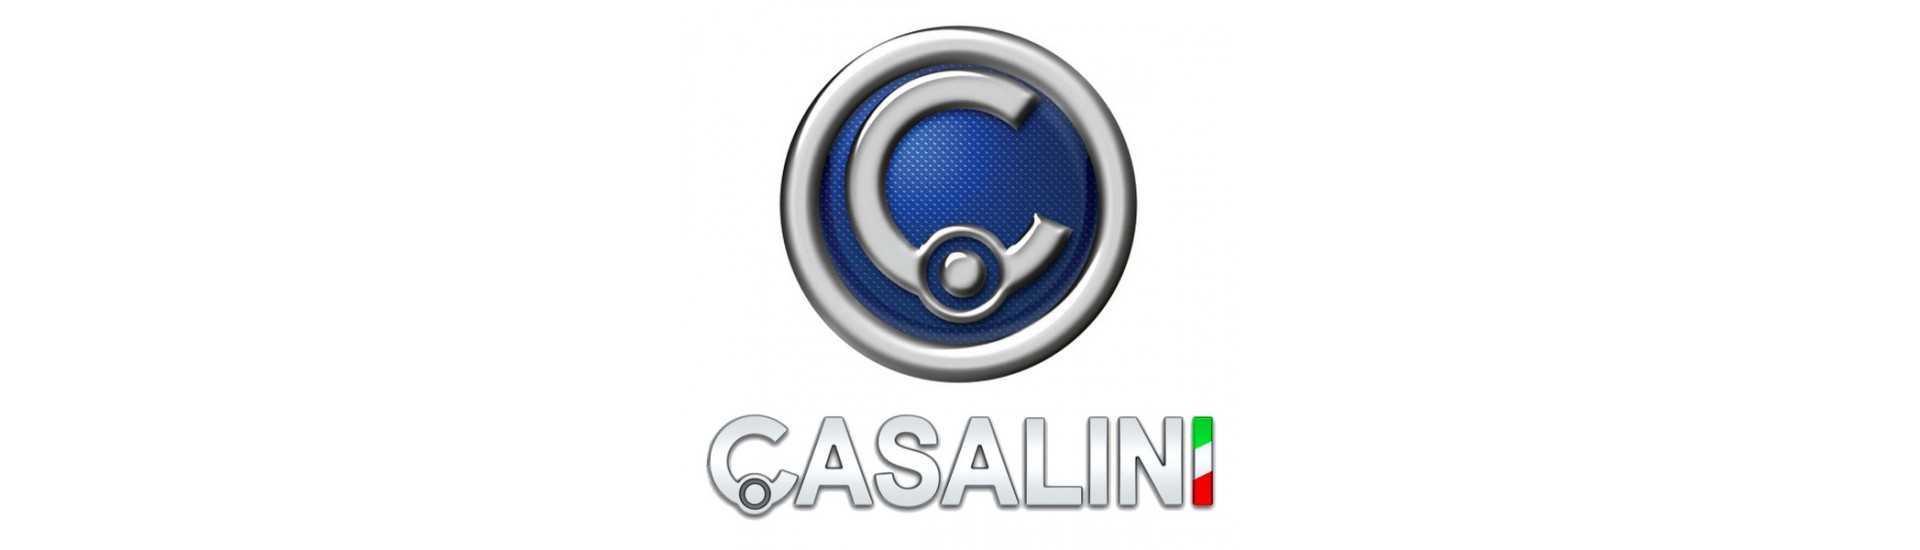 Motorradiator zum besten Preis für Auto ohne Lizenz Casalini